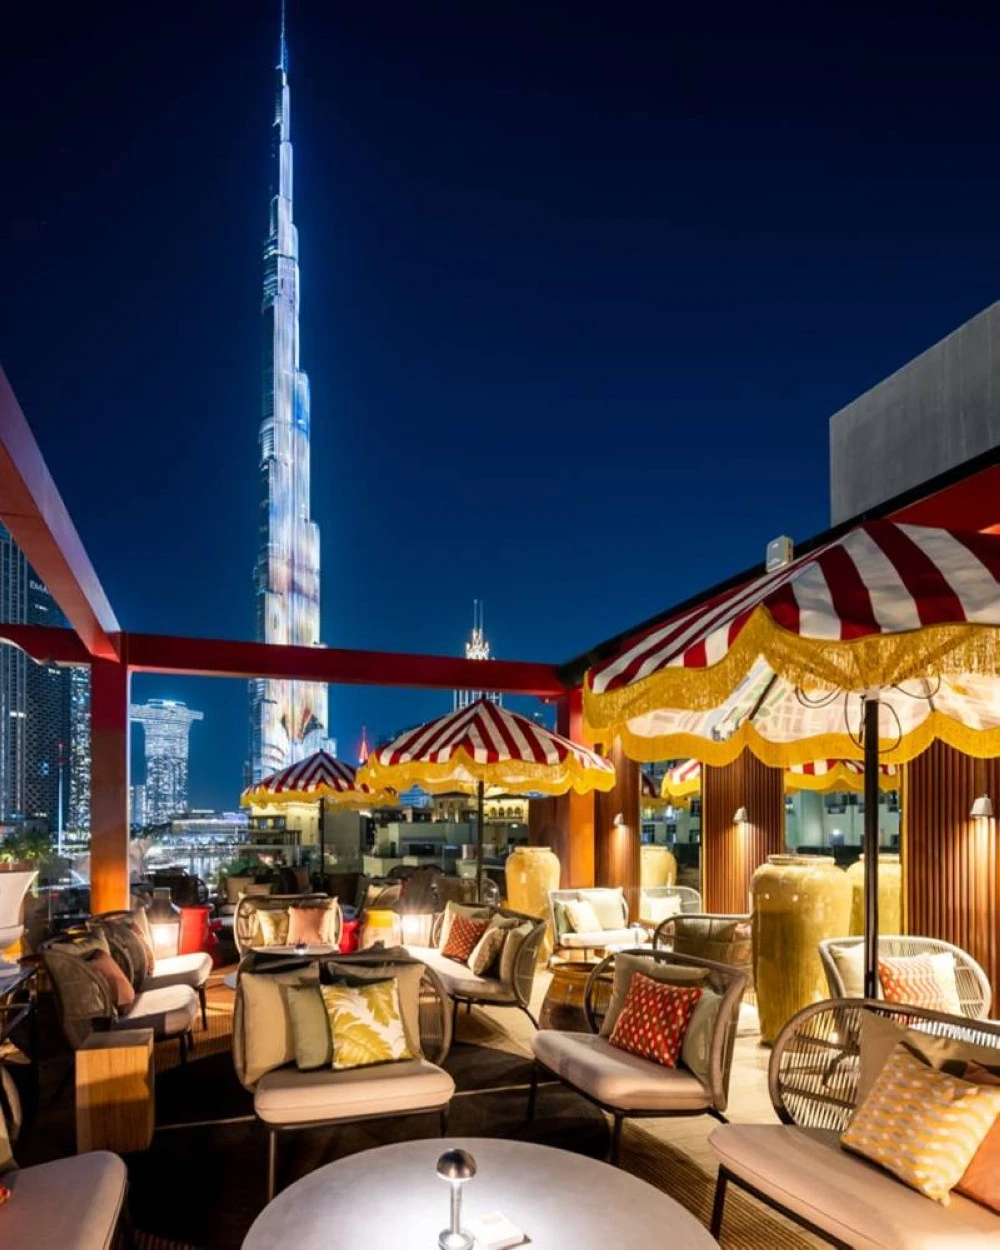 اجدد مطاعم فاخرة في دبي تستحقّ التجربة مع بداية عام 2023. لا تفوتكِ زيارتها!